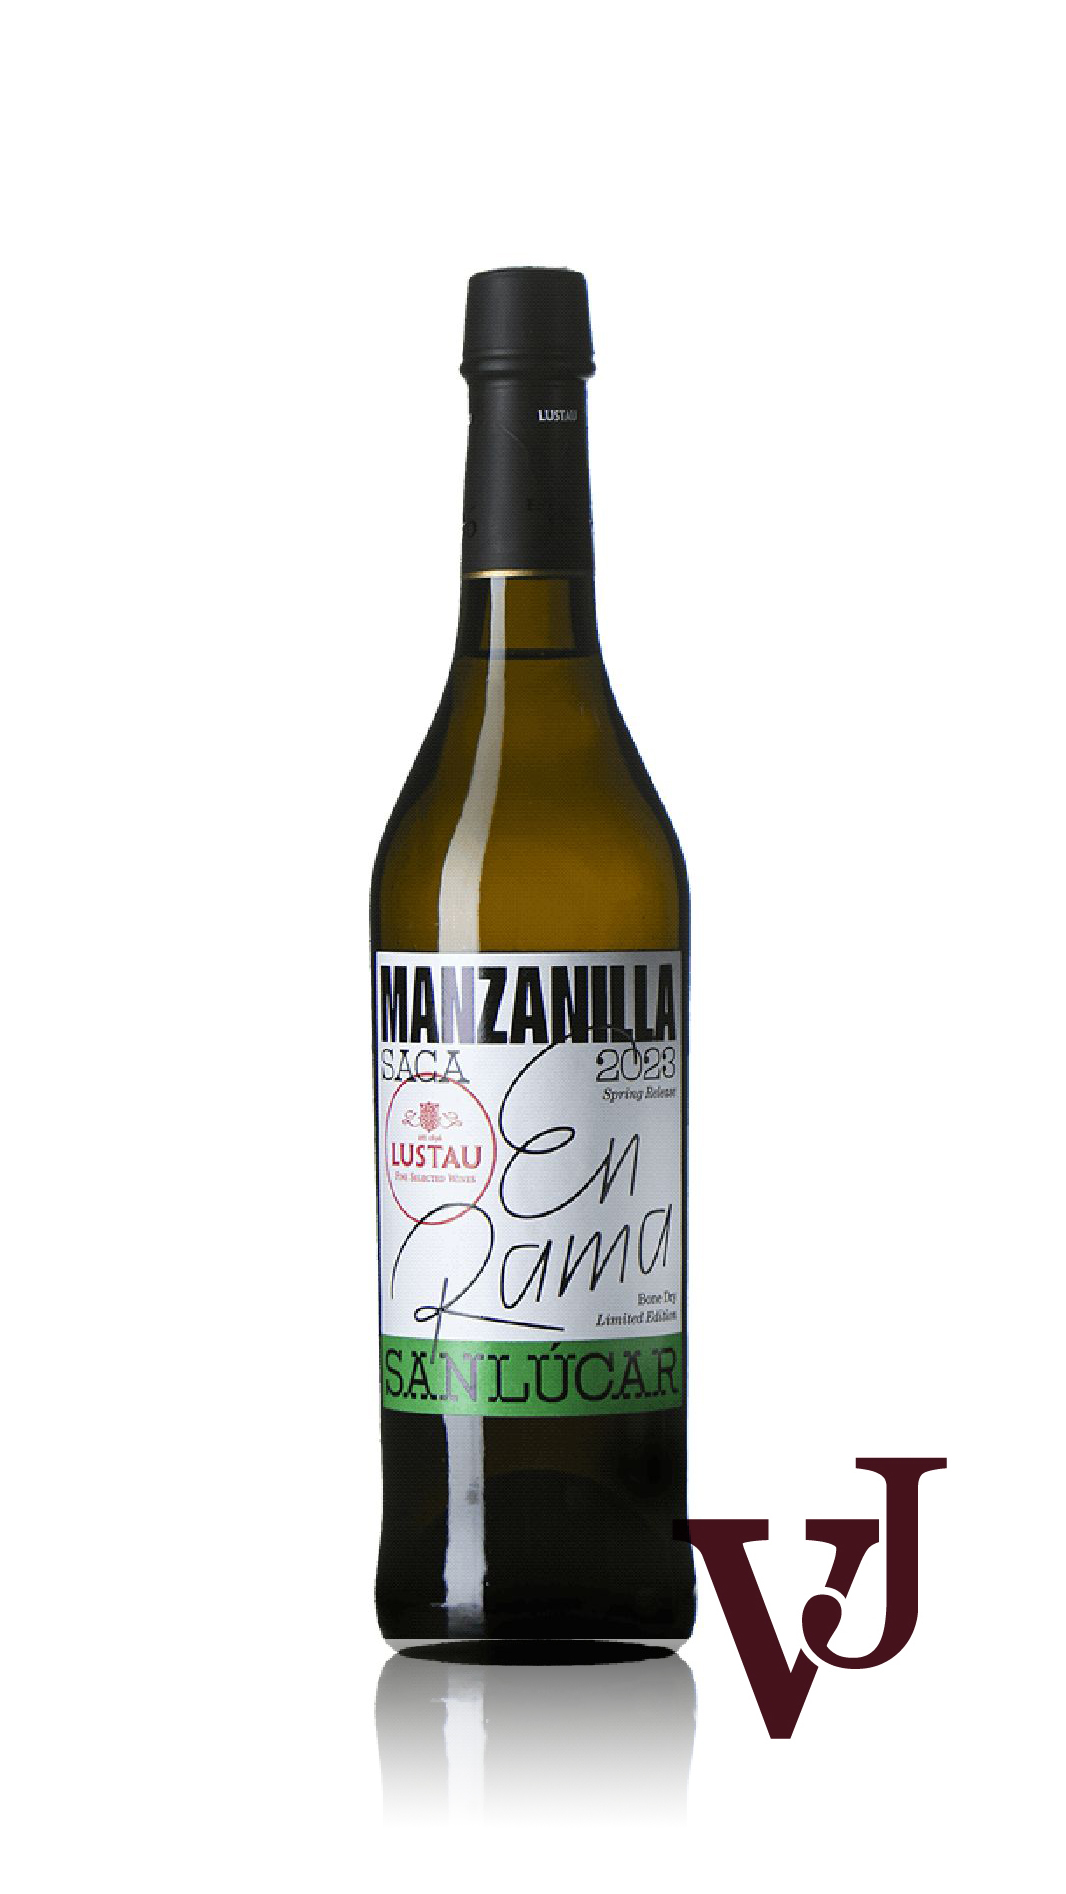 Stark vin - Lustau En Rama Manzanilla artikel nummer 9439902 från producenten Bodegas Lustau från Spanien